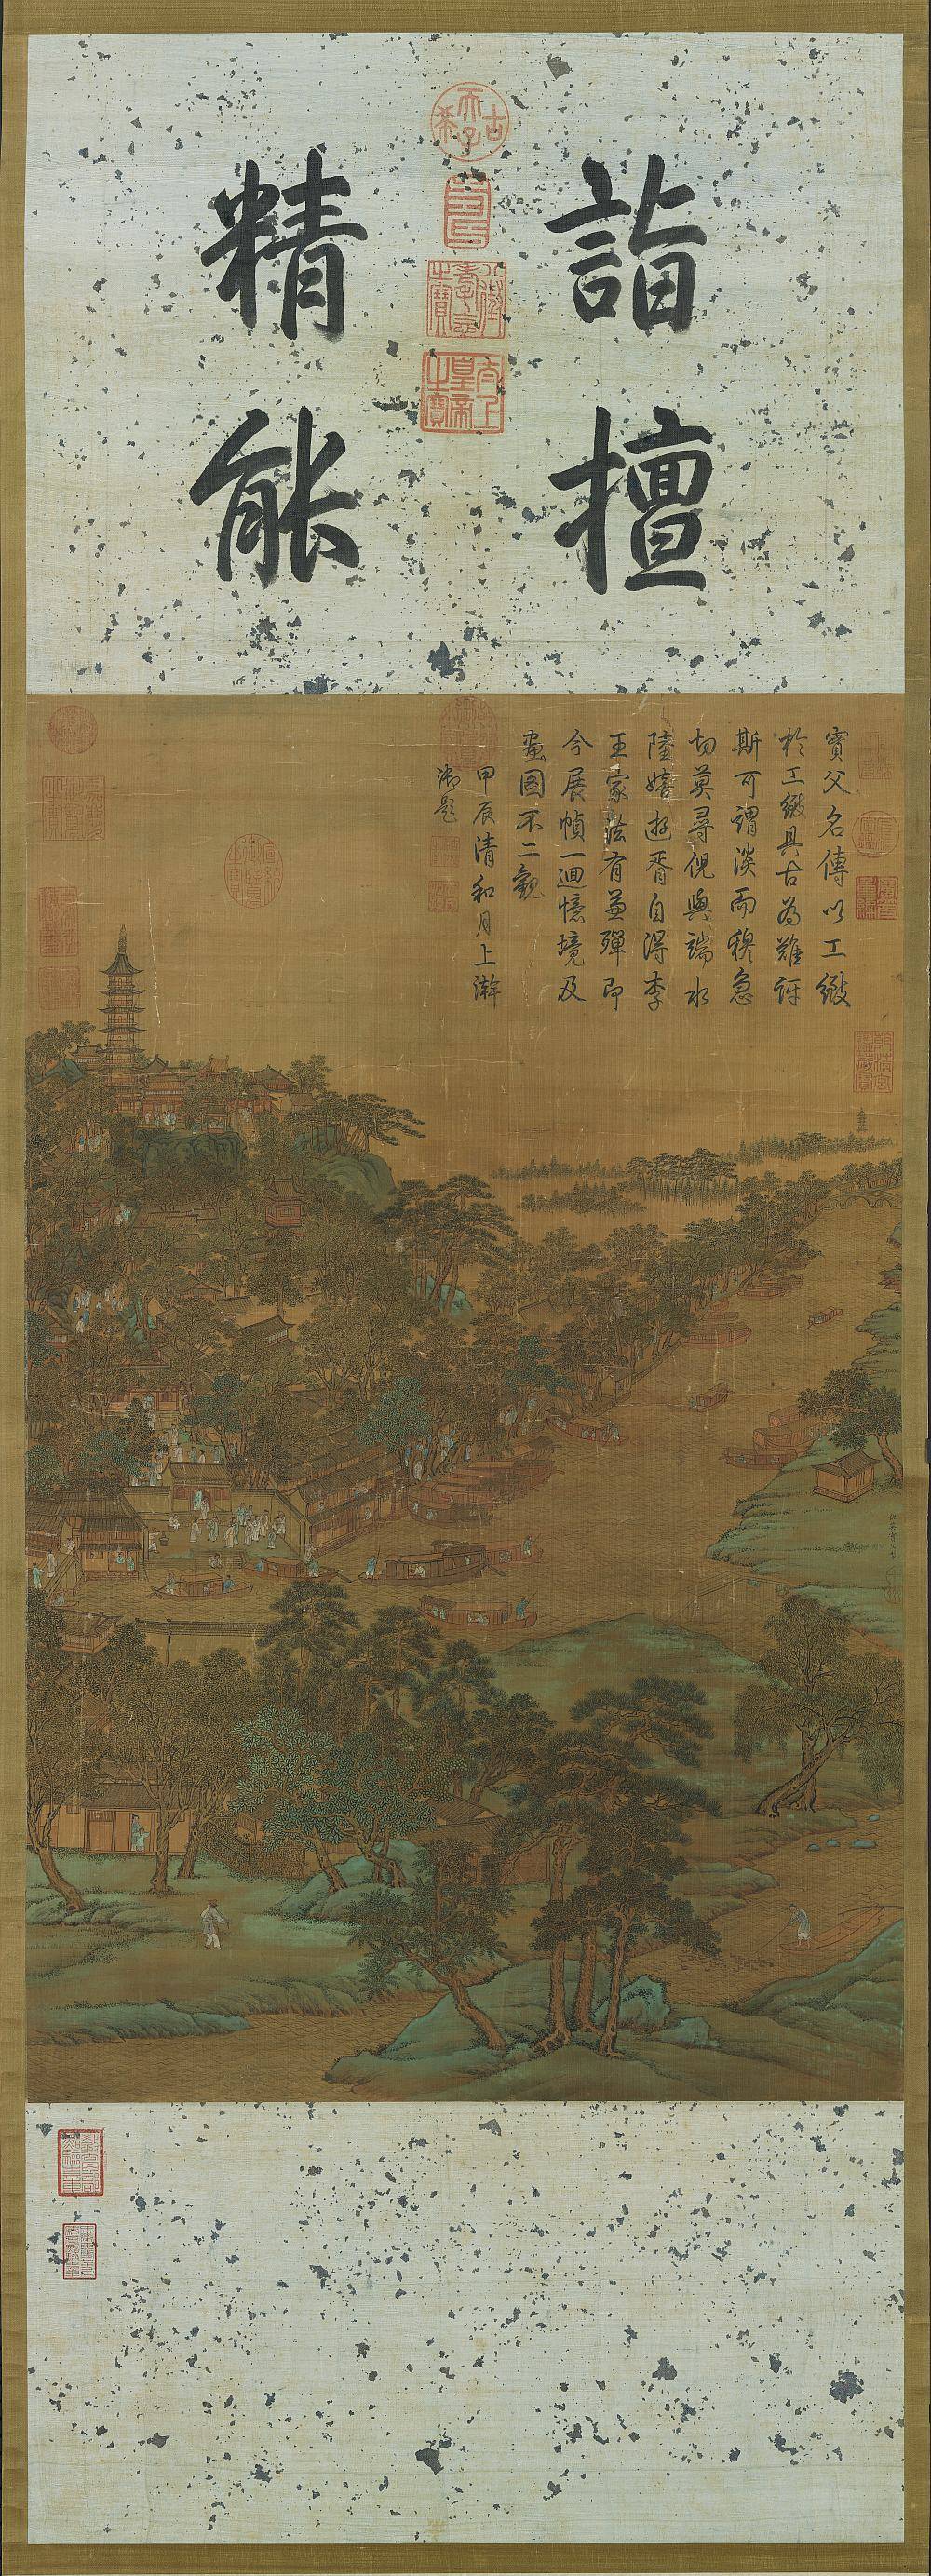 虎丘图轴.明仇英绘.绢本设色（80.7x50.3厘米）.台北故宫博物院藏.5117x14158像素